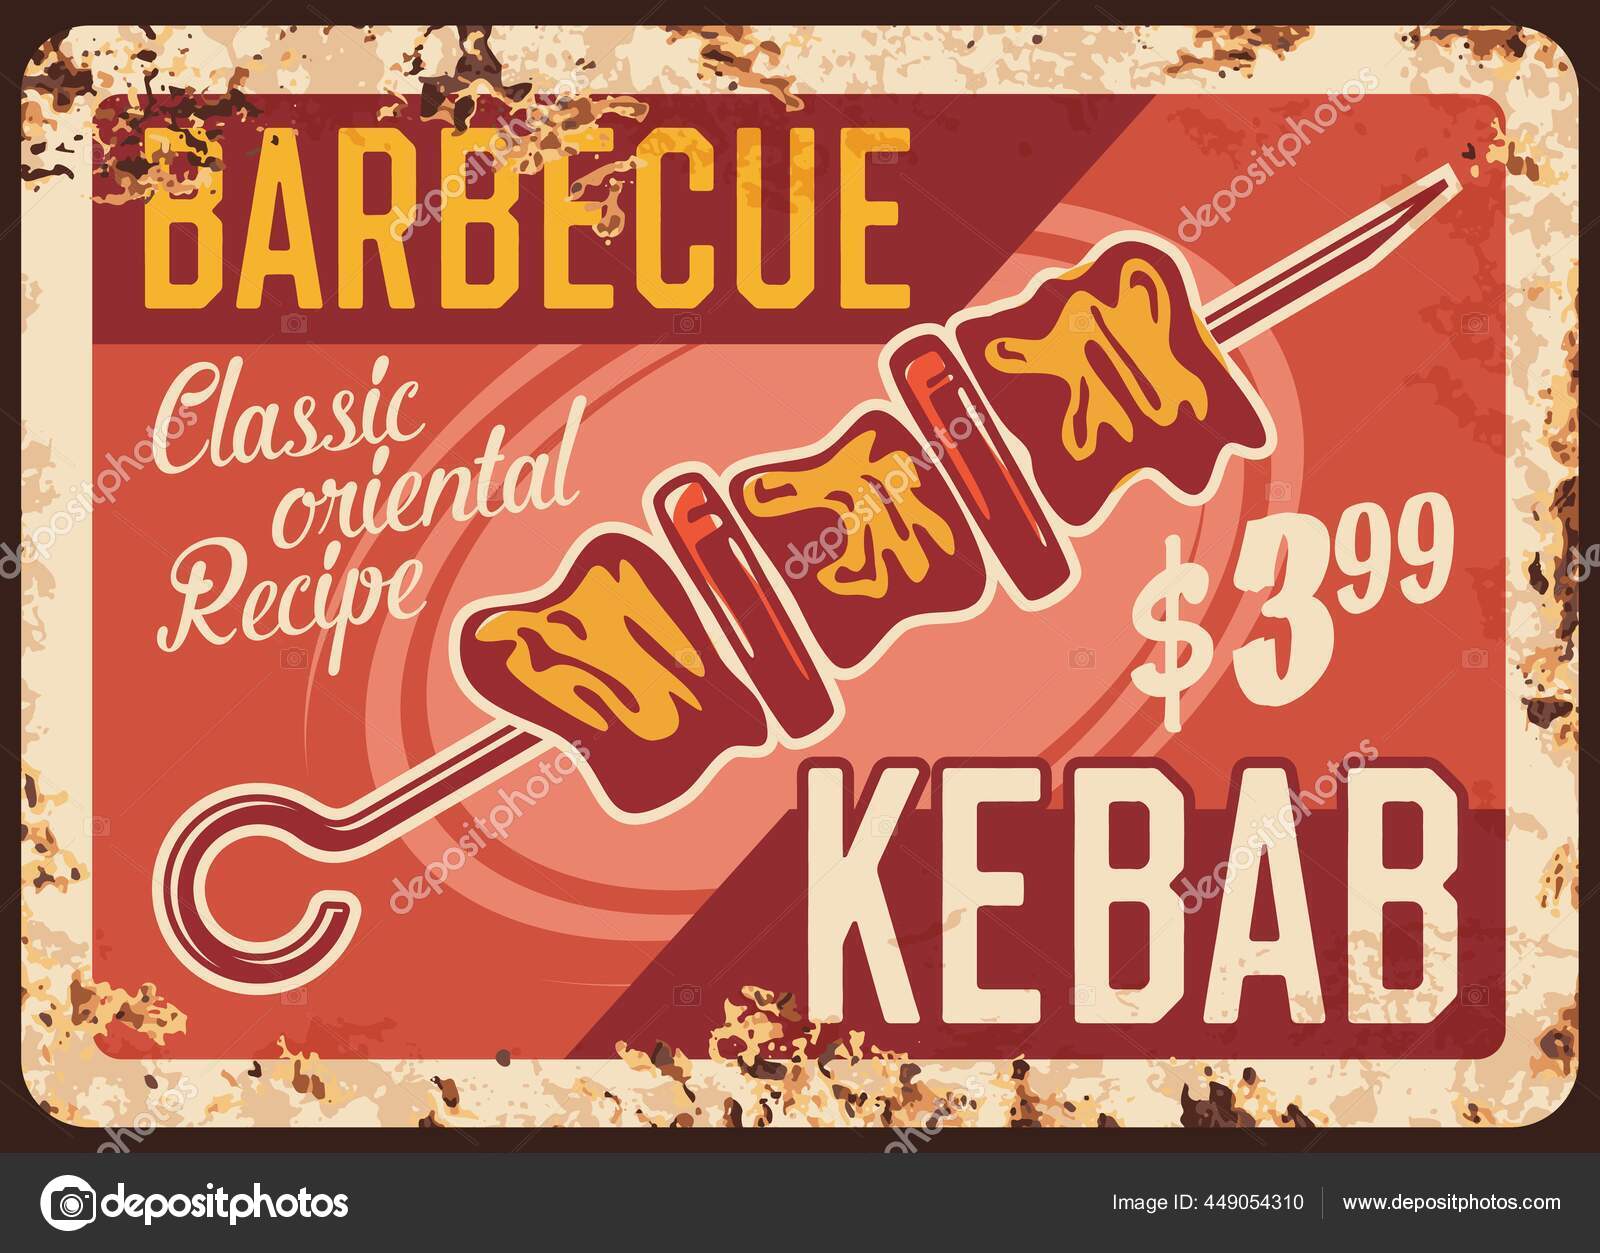 Churrasco Kebab Placa Metal Vetor Enferrujado Pedaços Carne Tomate Espetos  imagem vetorial de Seamartini© 449054310